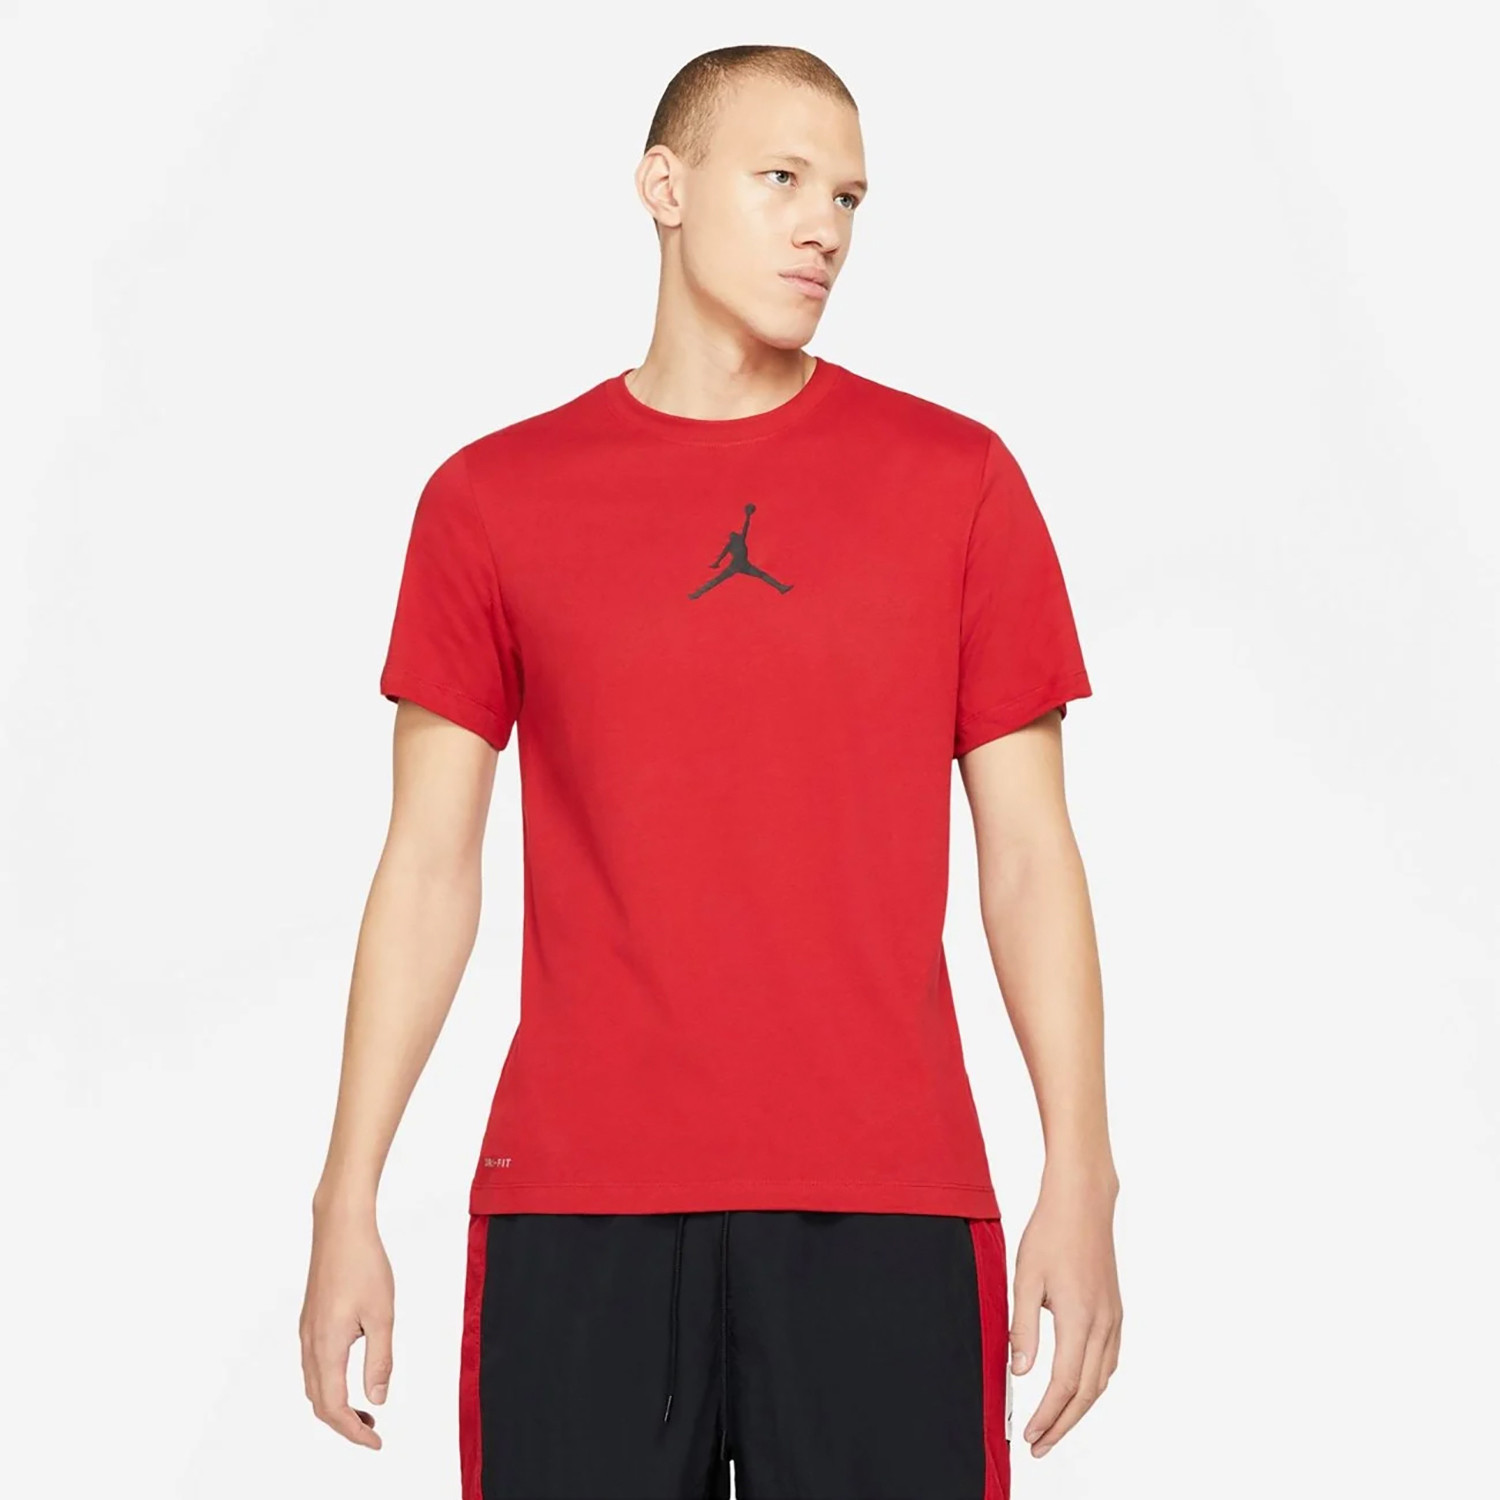 Jordan Jumpman Air T-Shirt